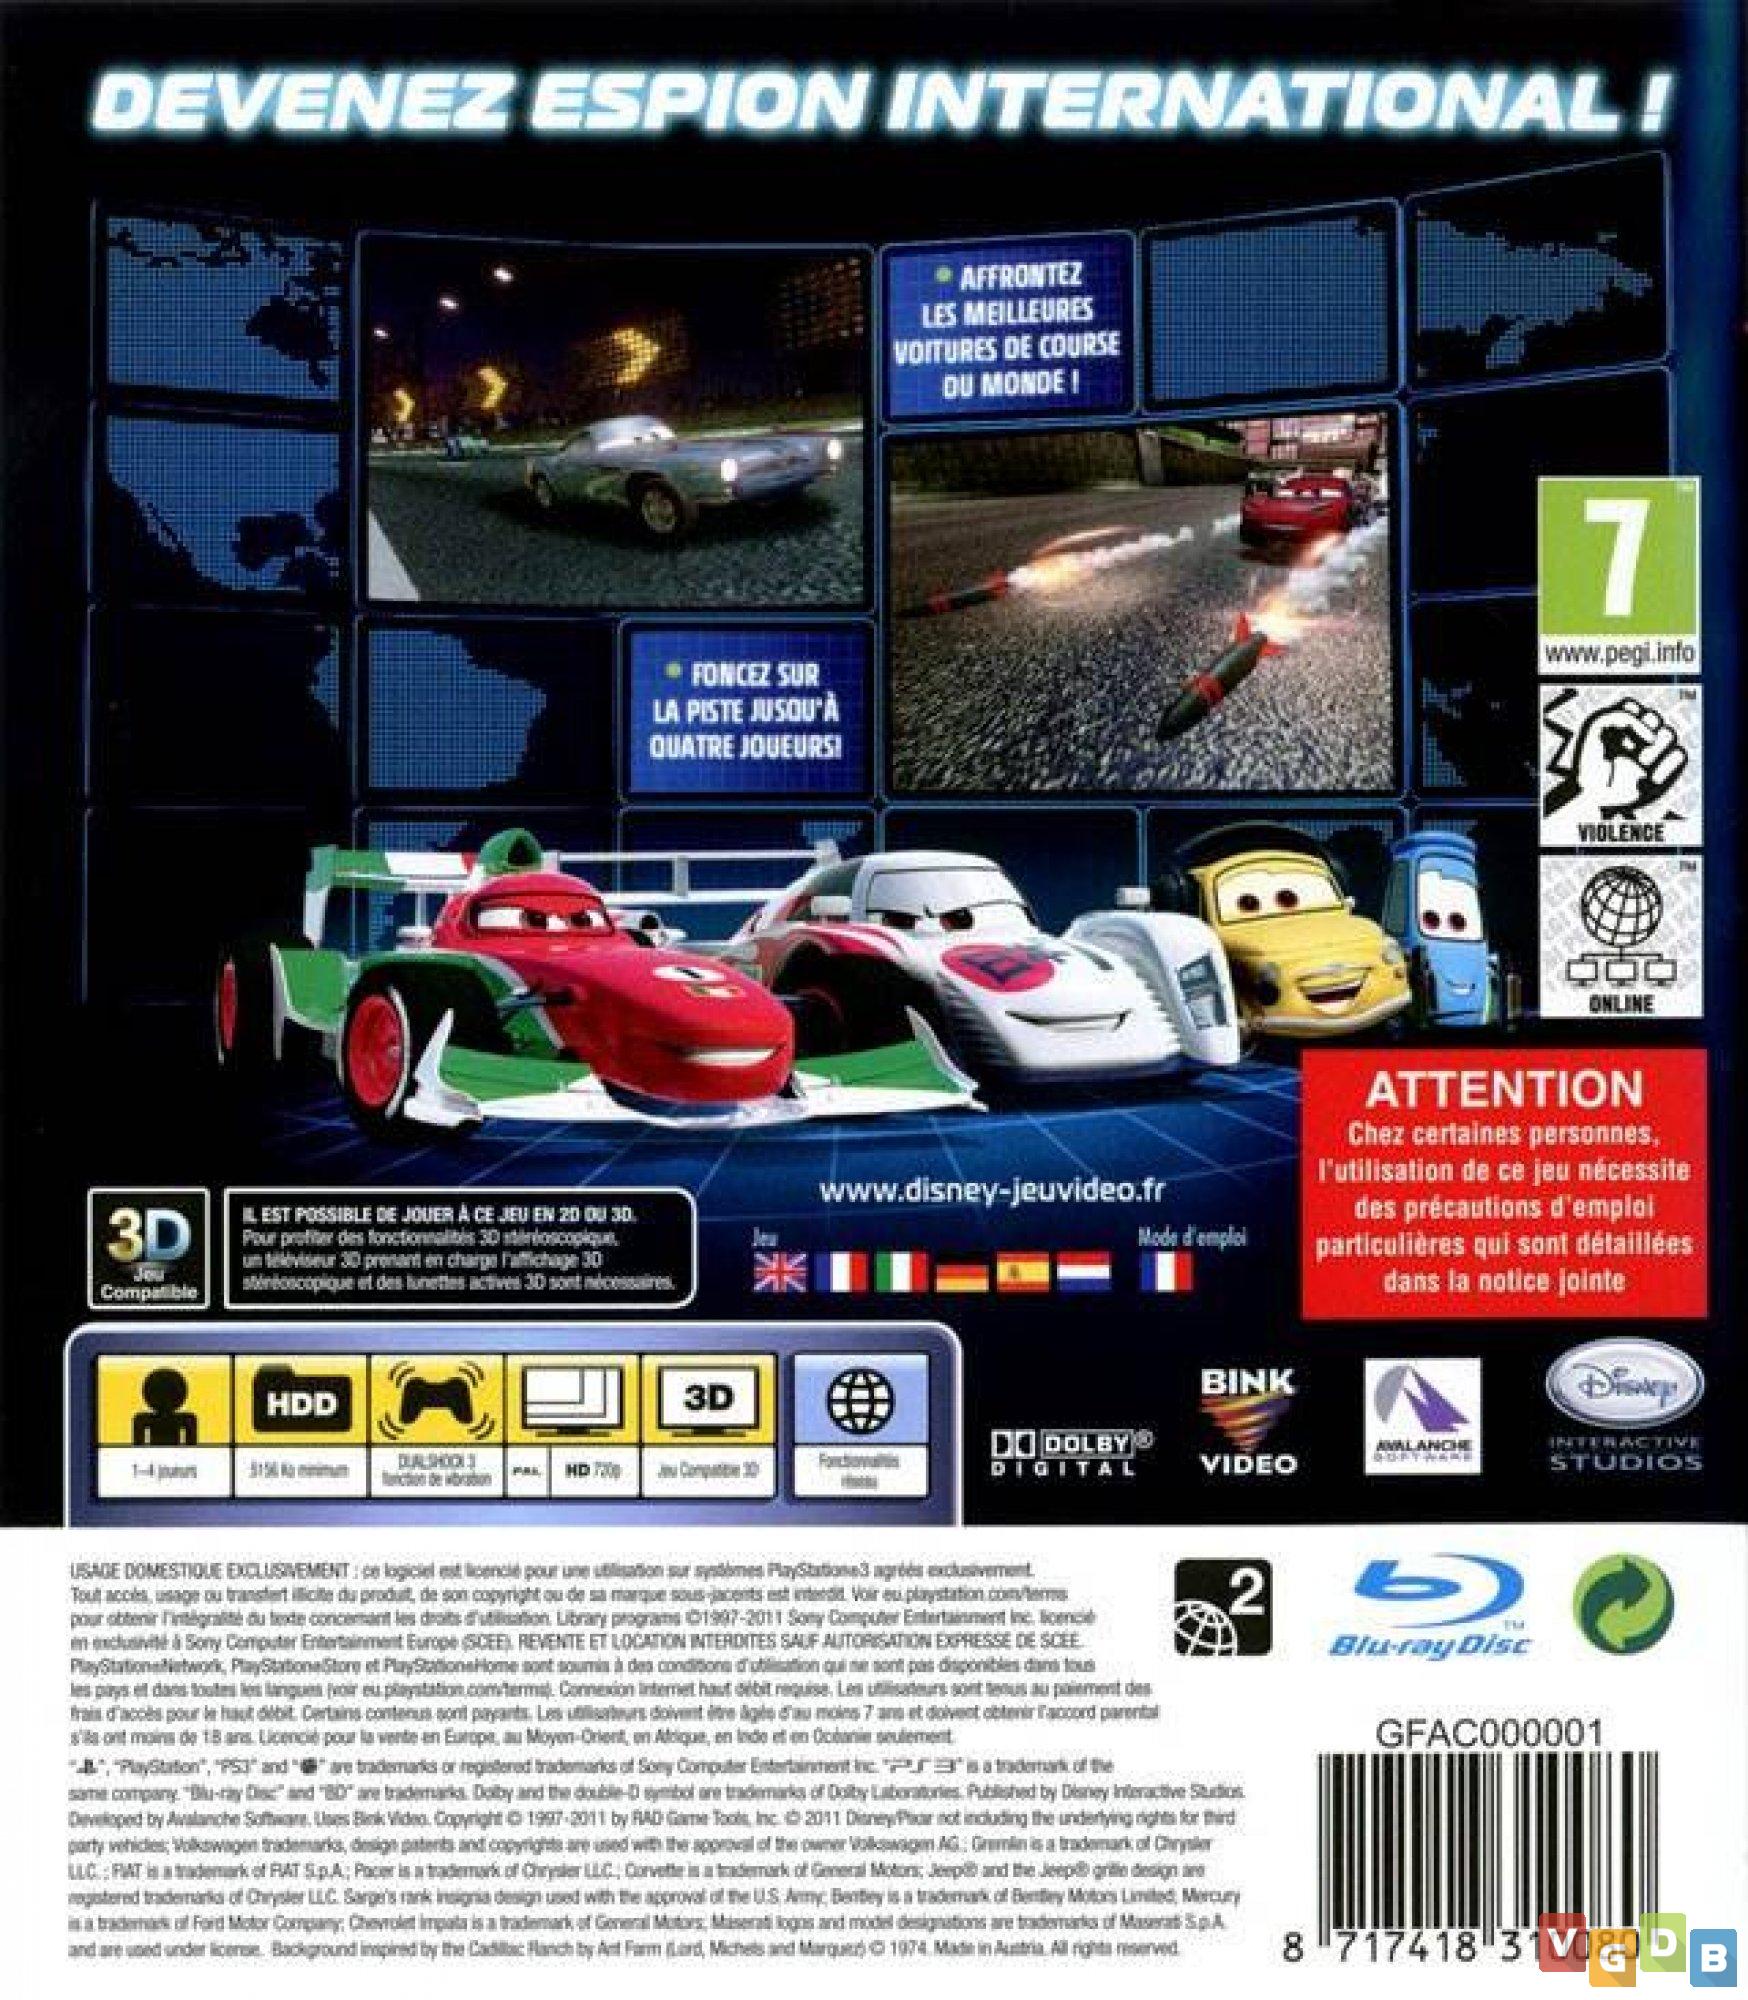 Preços baixos em Carros de Corrida 2: The Video Game classificação E10+  (todos 10+) Video Games